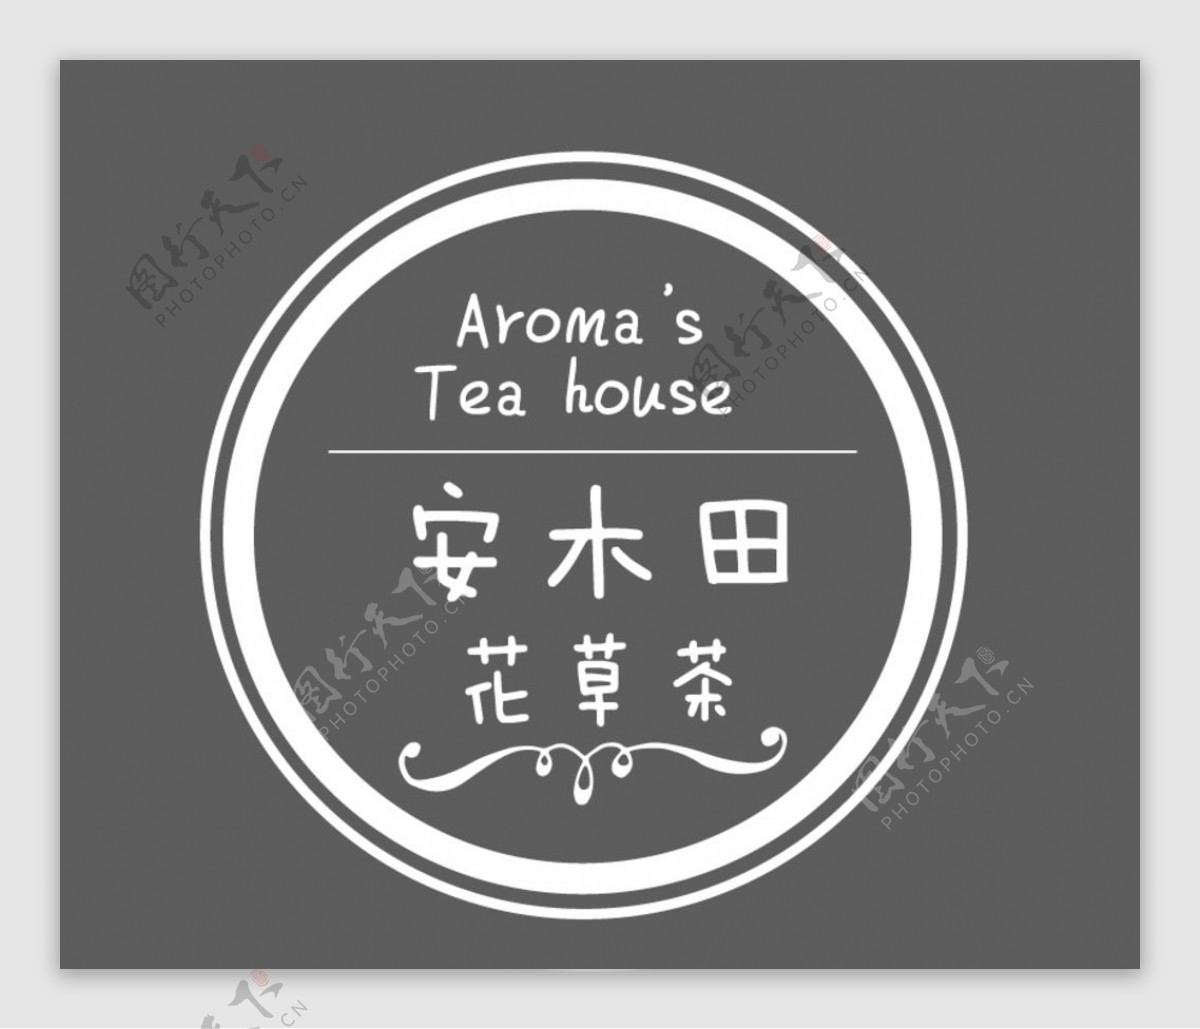 圆形logo标志花草茶店标